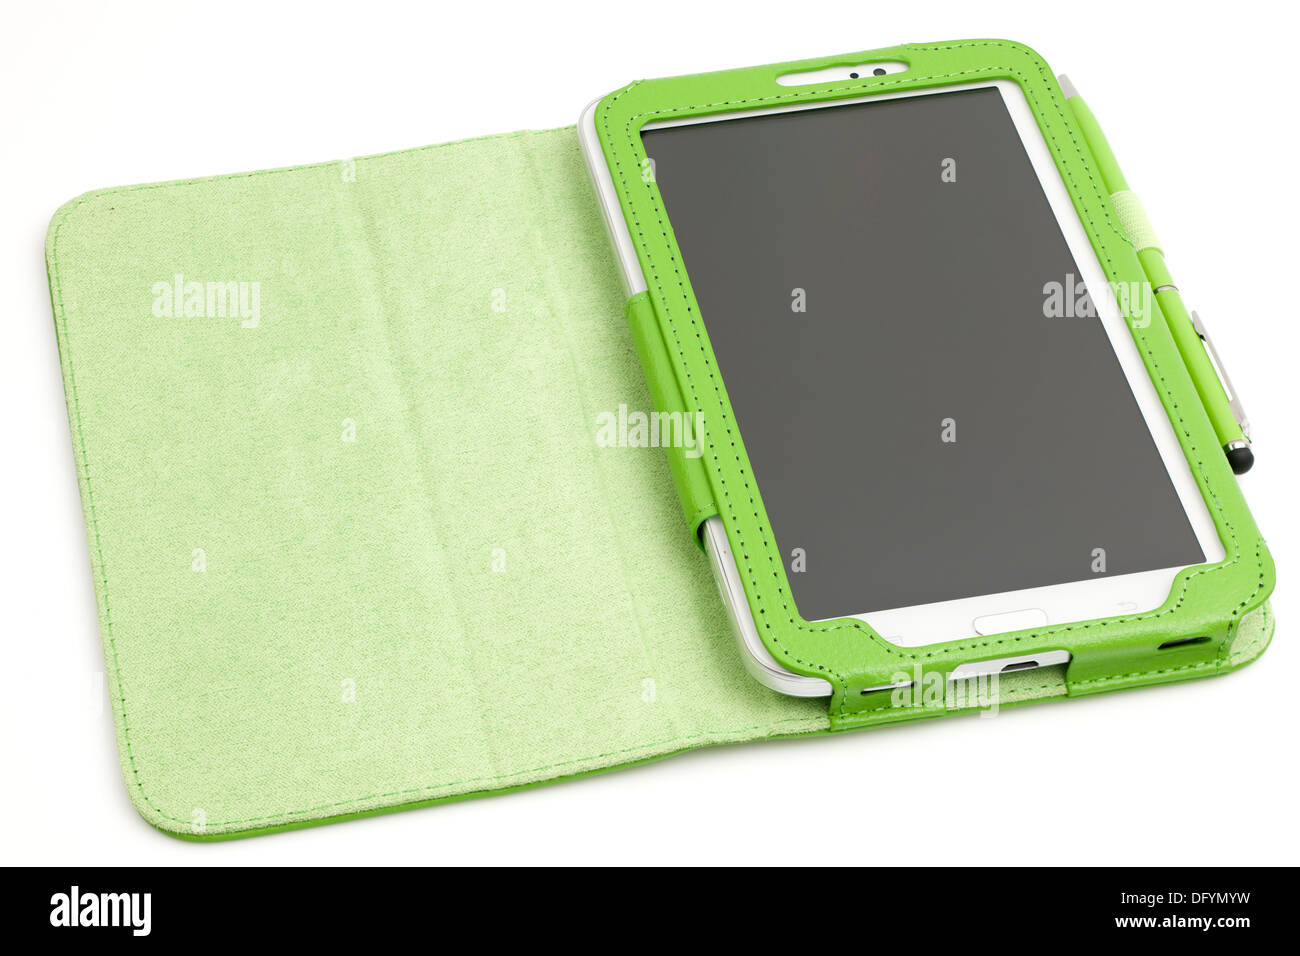 Samsung Galaxy Tab 3 tableta de 7 pulgadas con funda protectora y bolígrafo Foto de stock